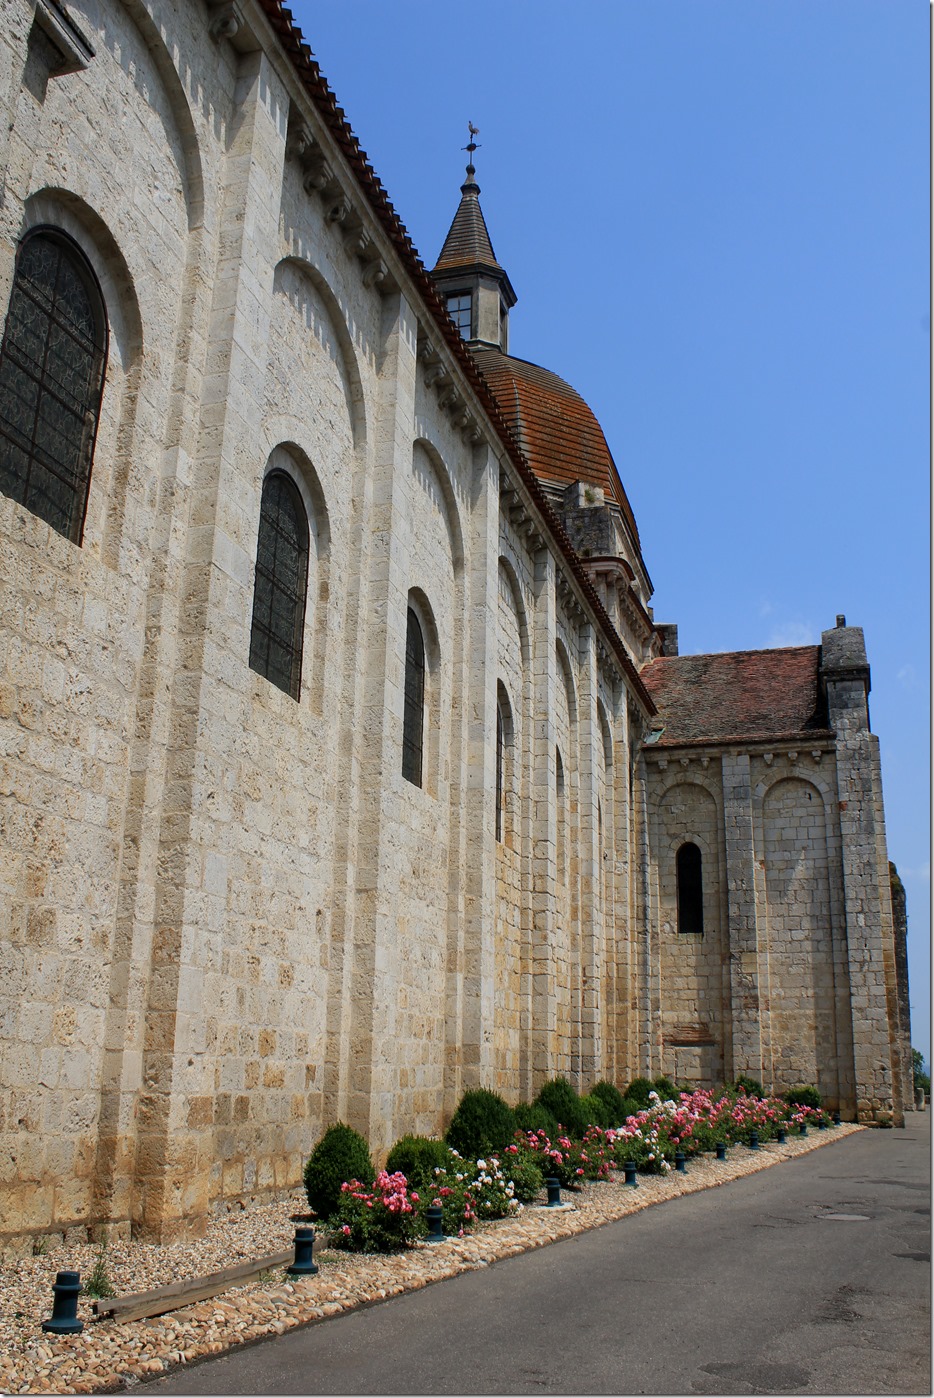 The St Martin Church in Layrac